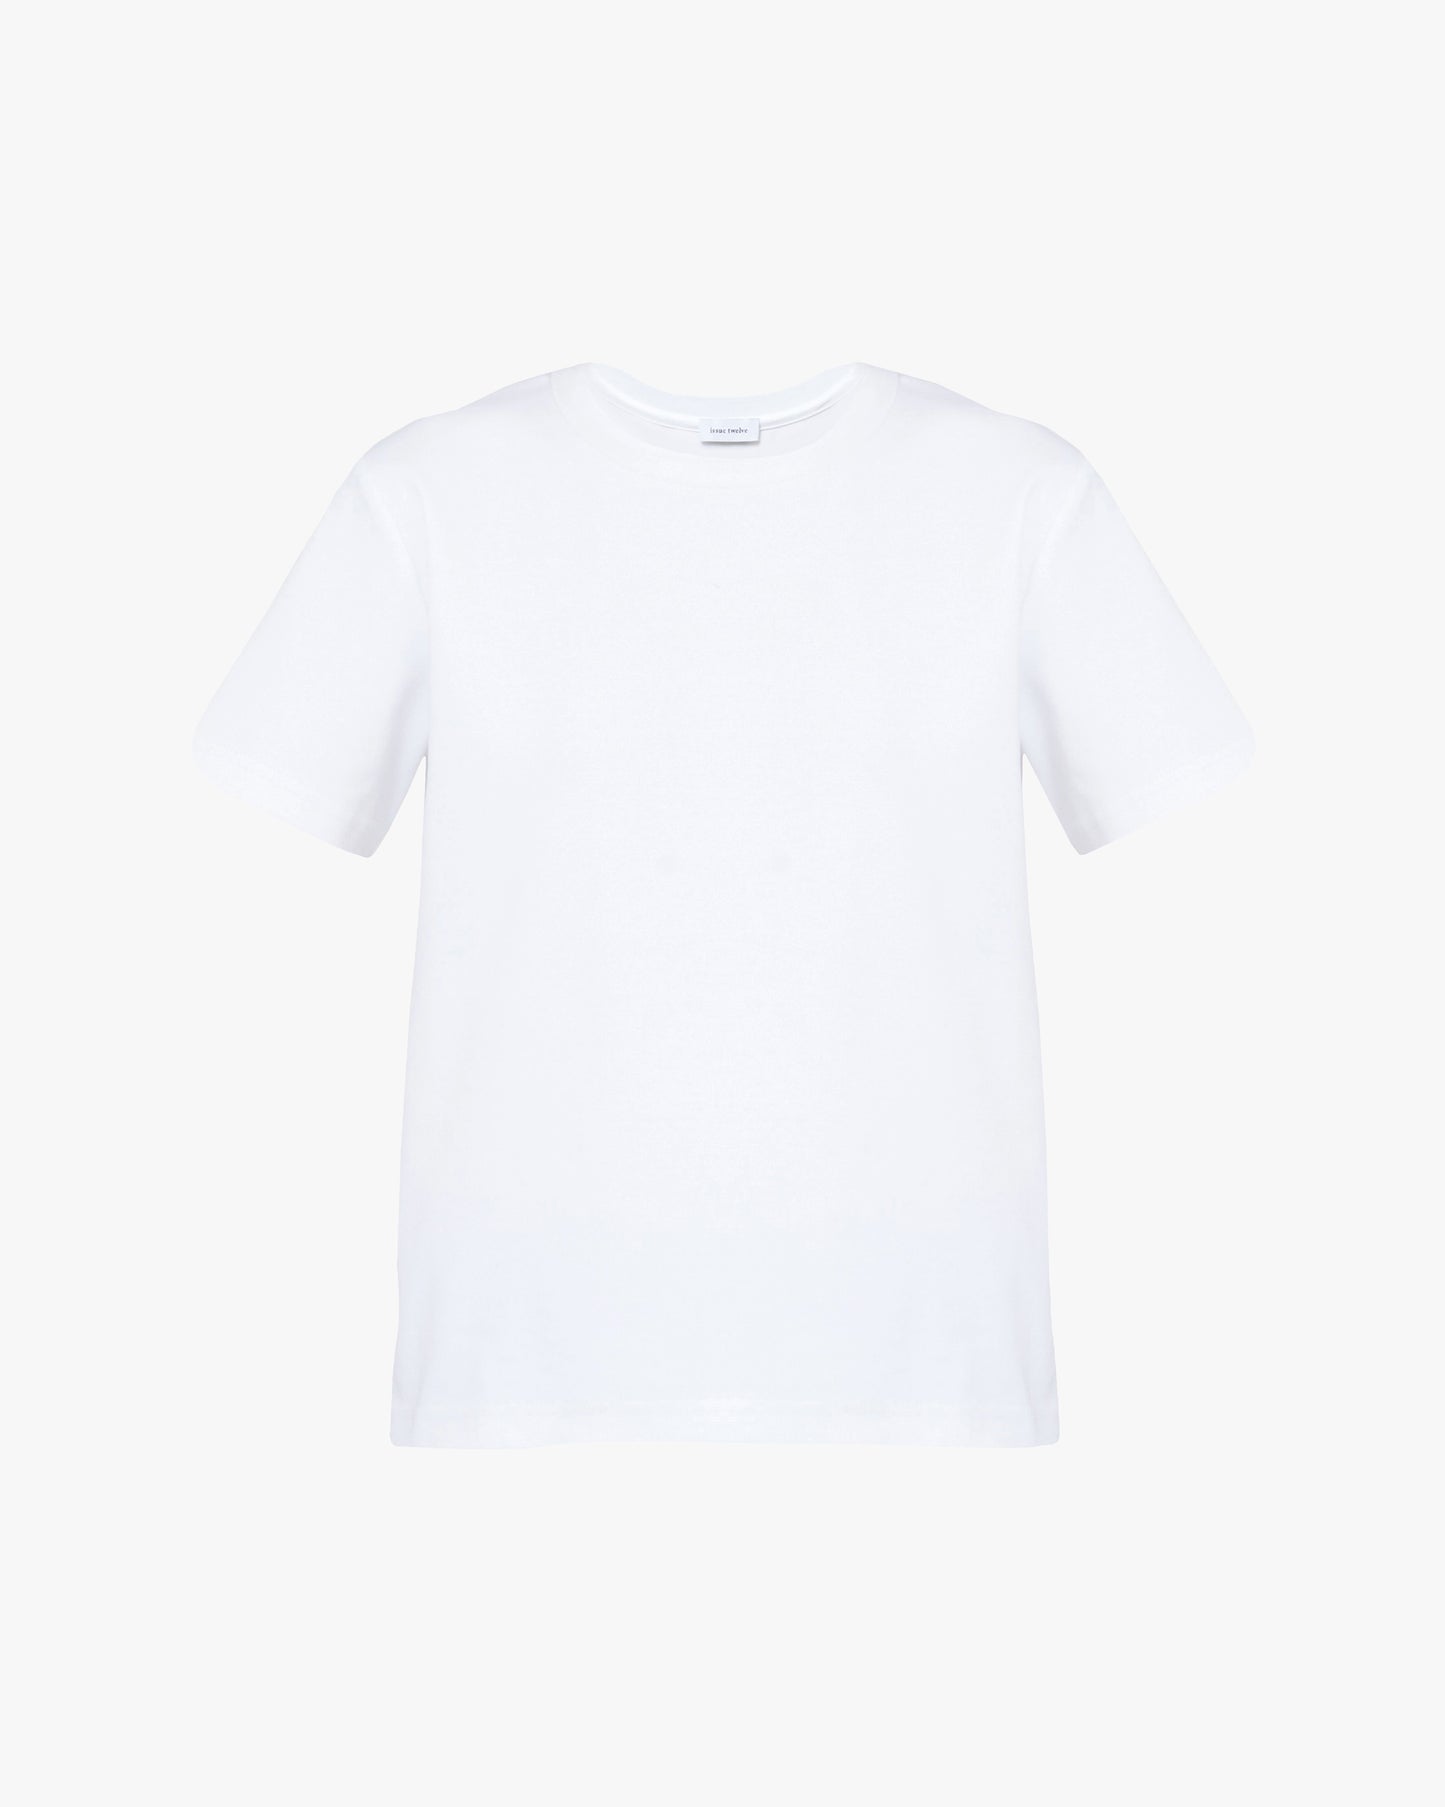 Ada T-Shirt in Cotton